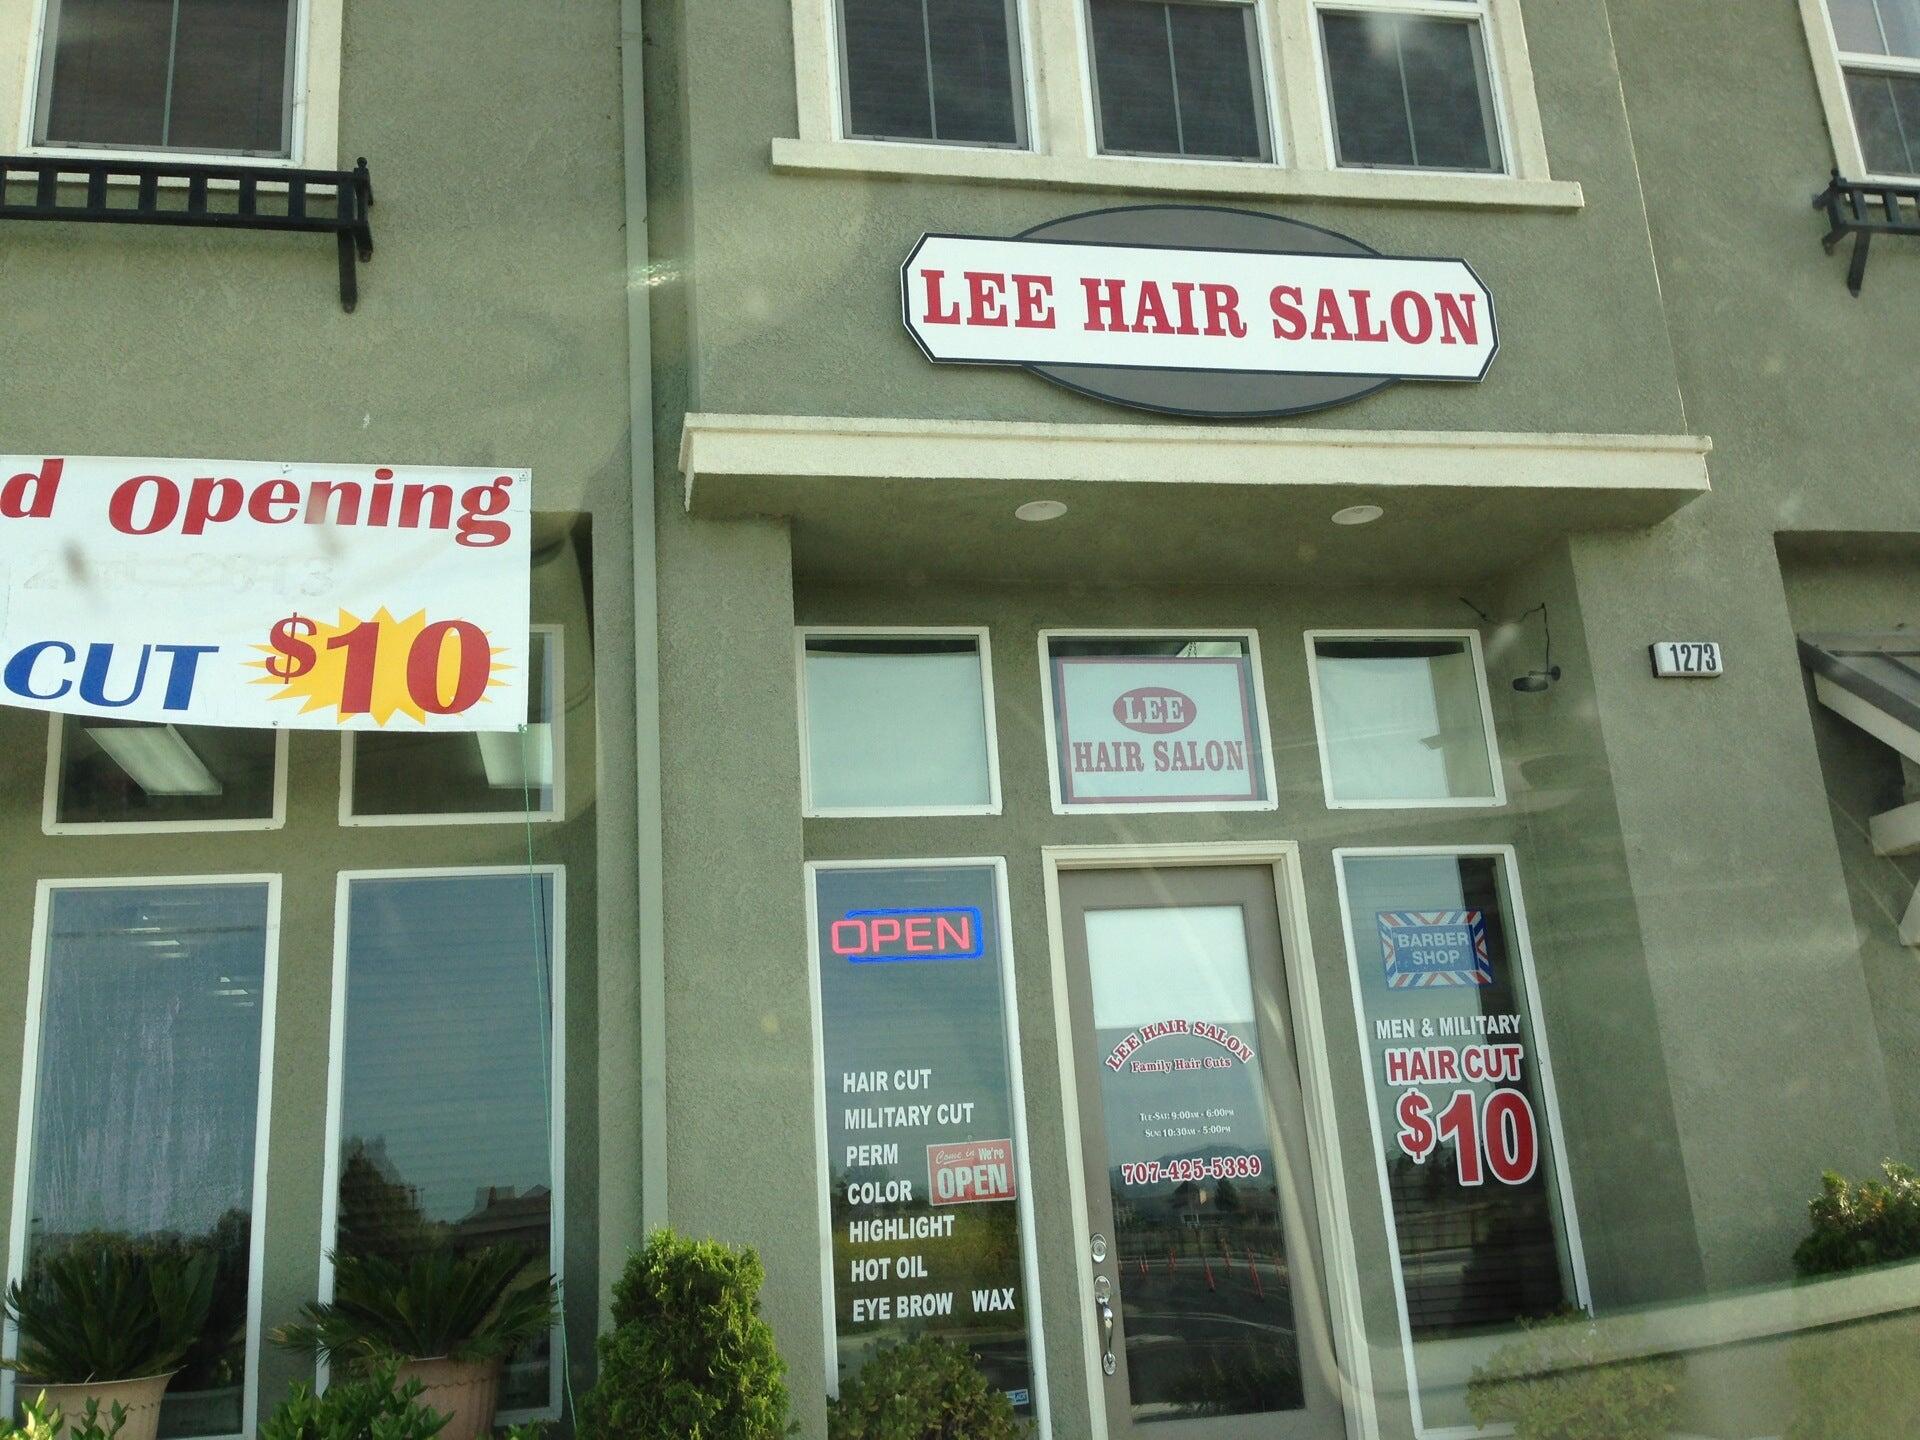 Lee Hair Salon - Suisun City, CA - Nextdoor